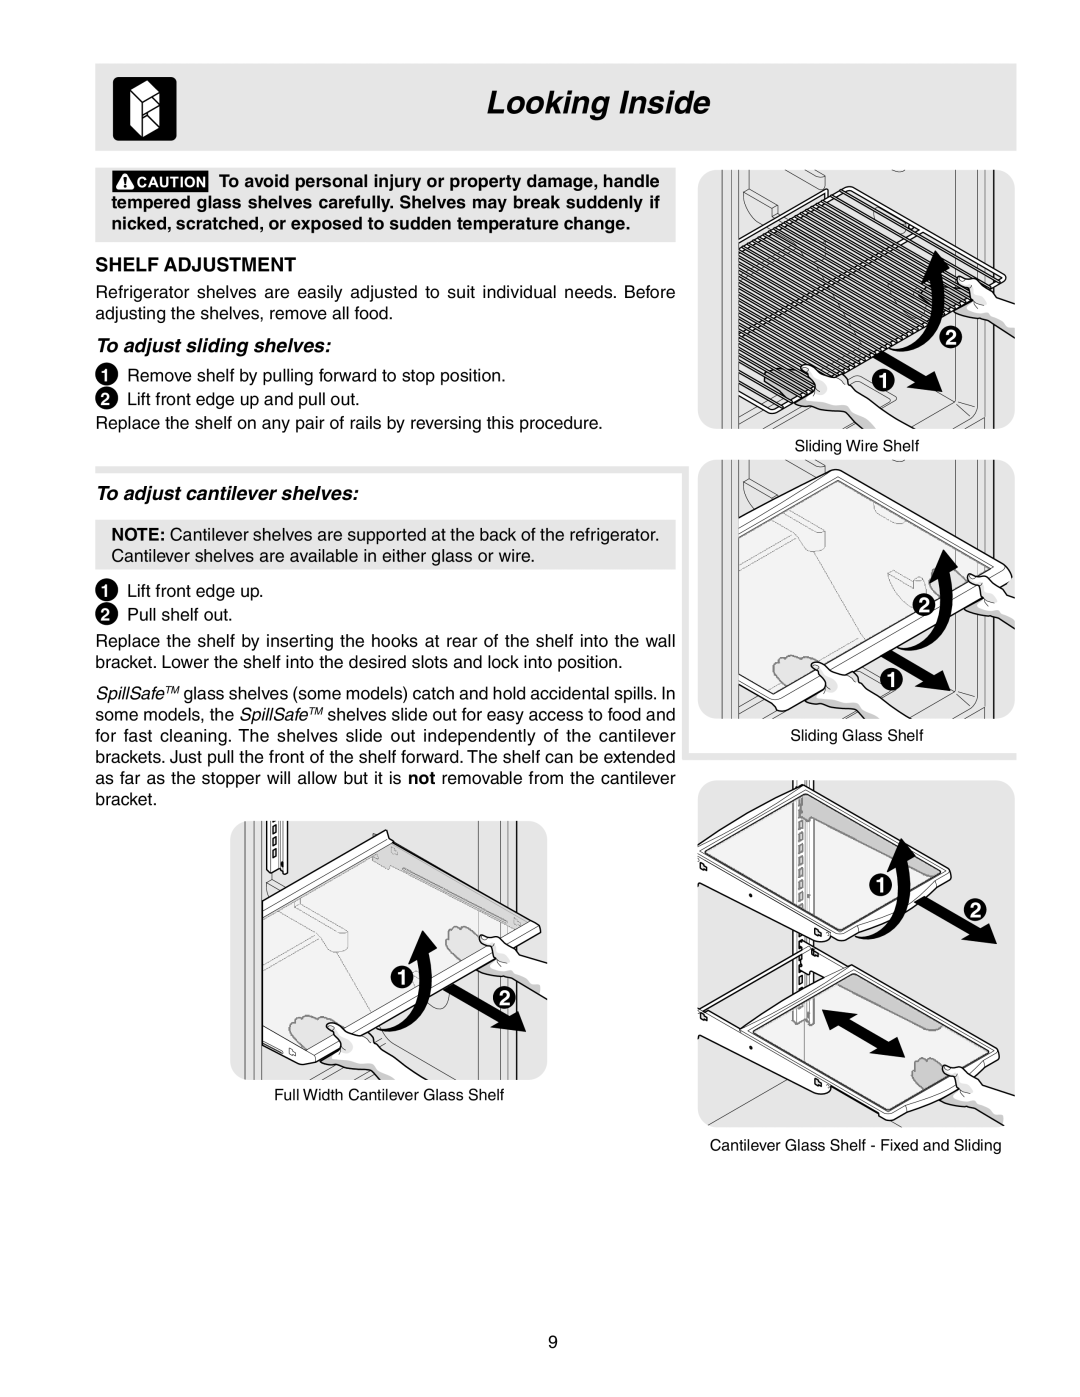 Frigidaire 241567601 manual Looking Inside, Shelf Adjustment, To adjust sliding shelves, To adjust cantilever shelves 